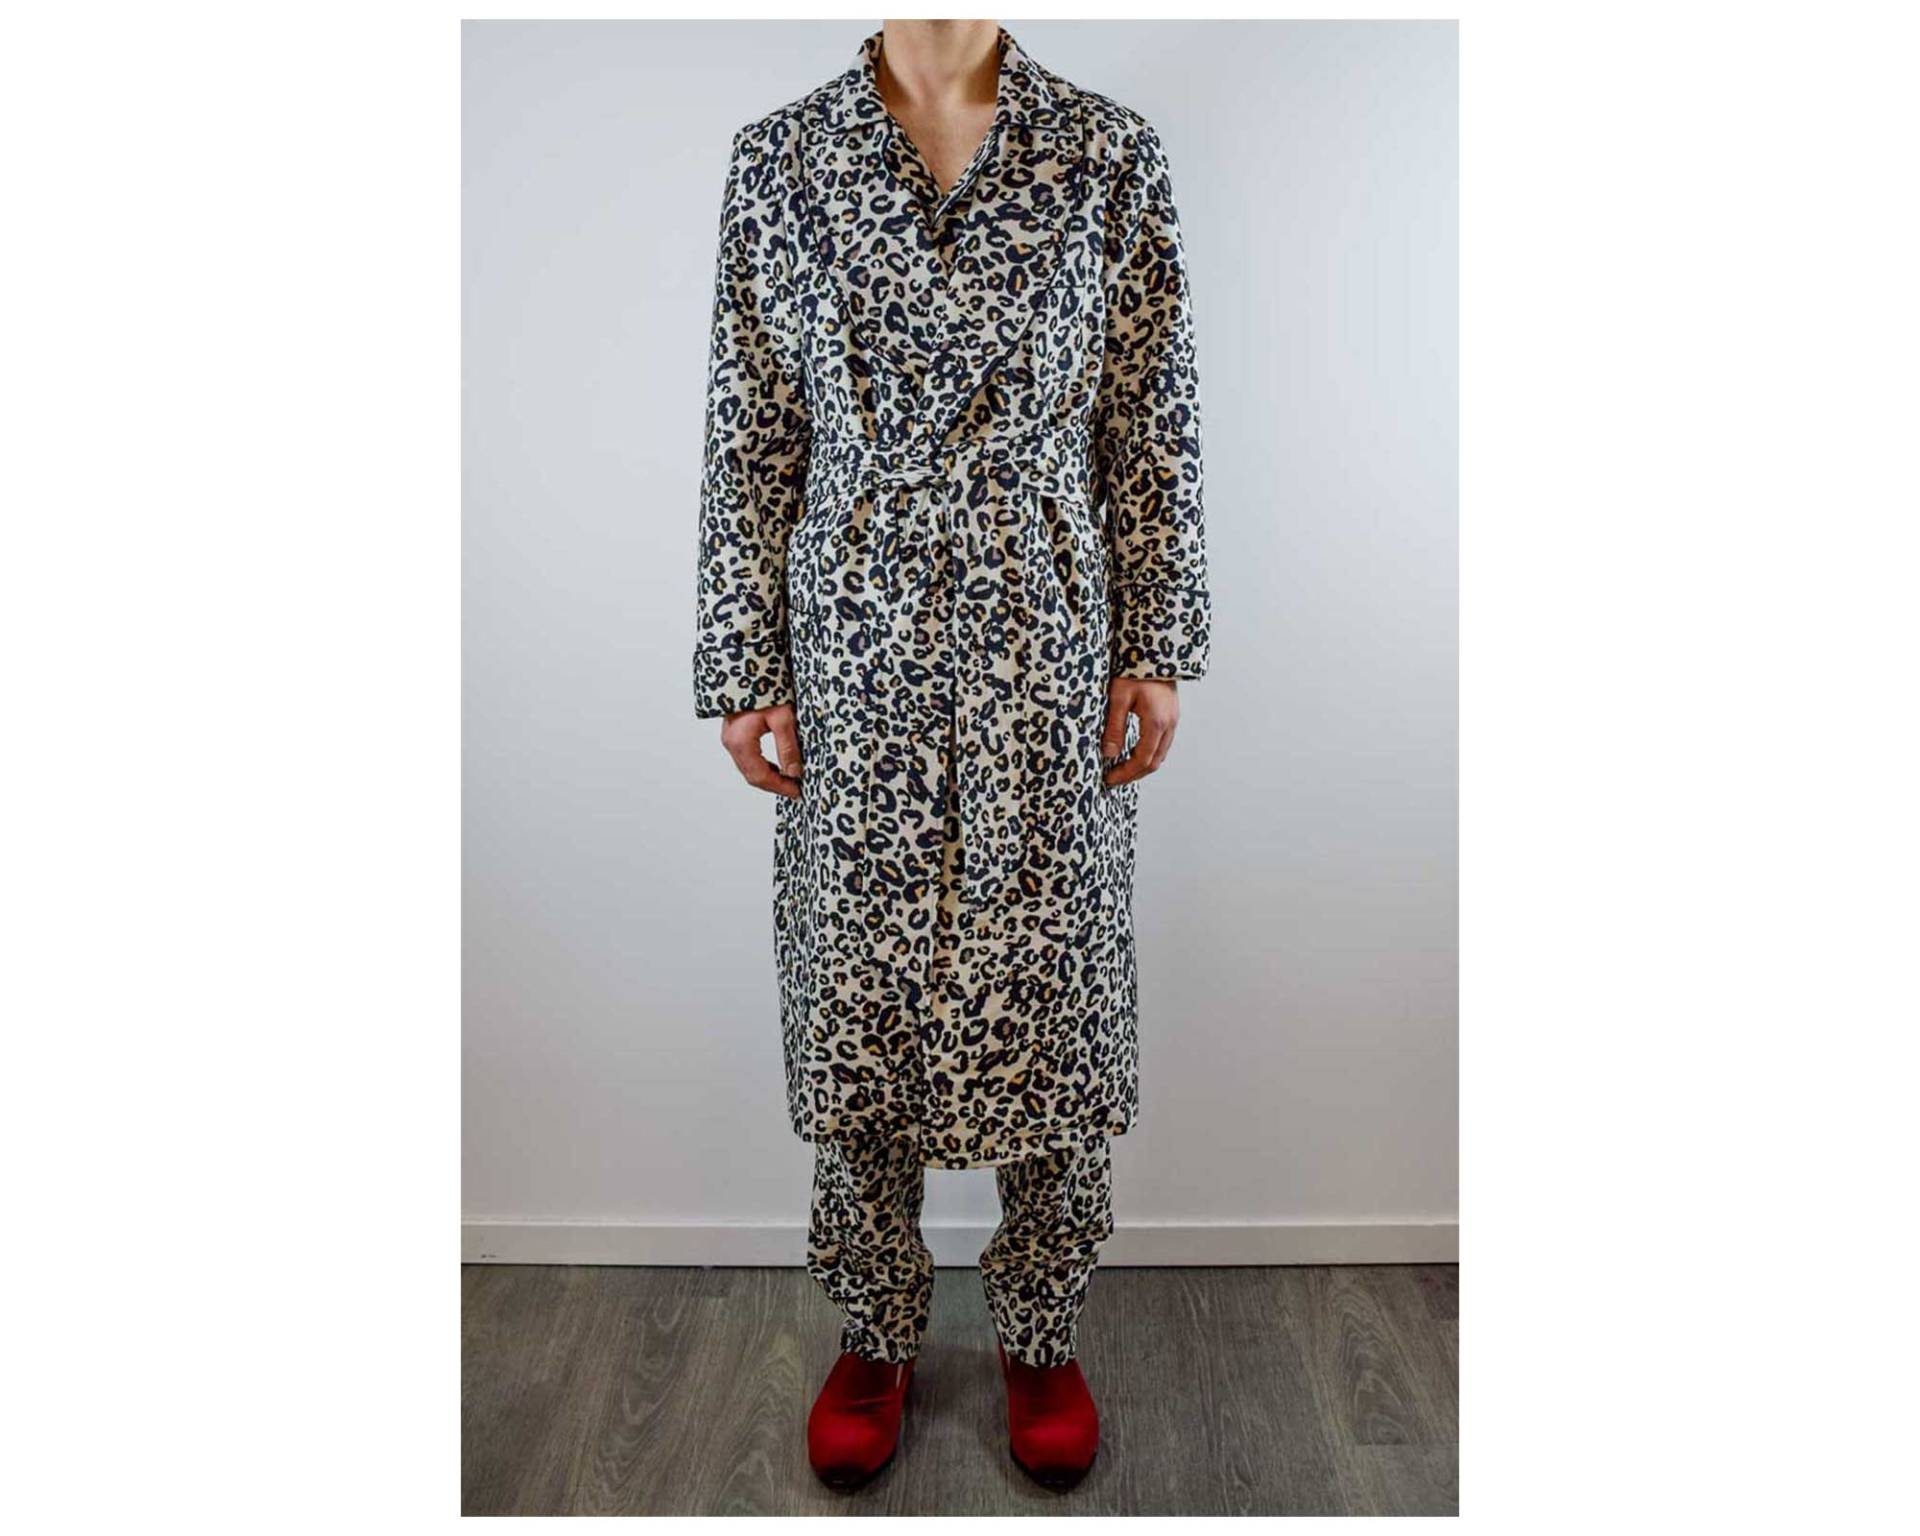 Herren Hausmantel Leopard Animal Print Baumwolle Schalkragen Gesteppt Gefüttert Lang Mit Monogramm Luxus Morgenmantel von baturinahomewear